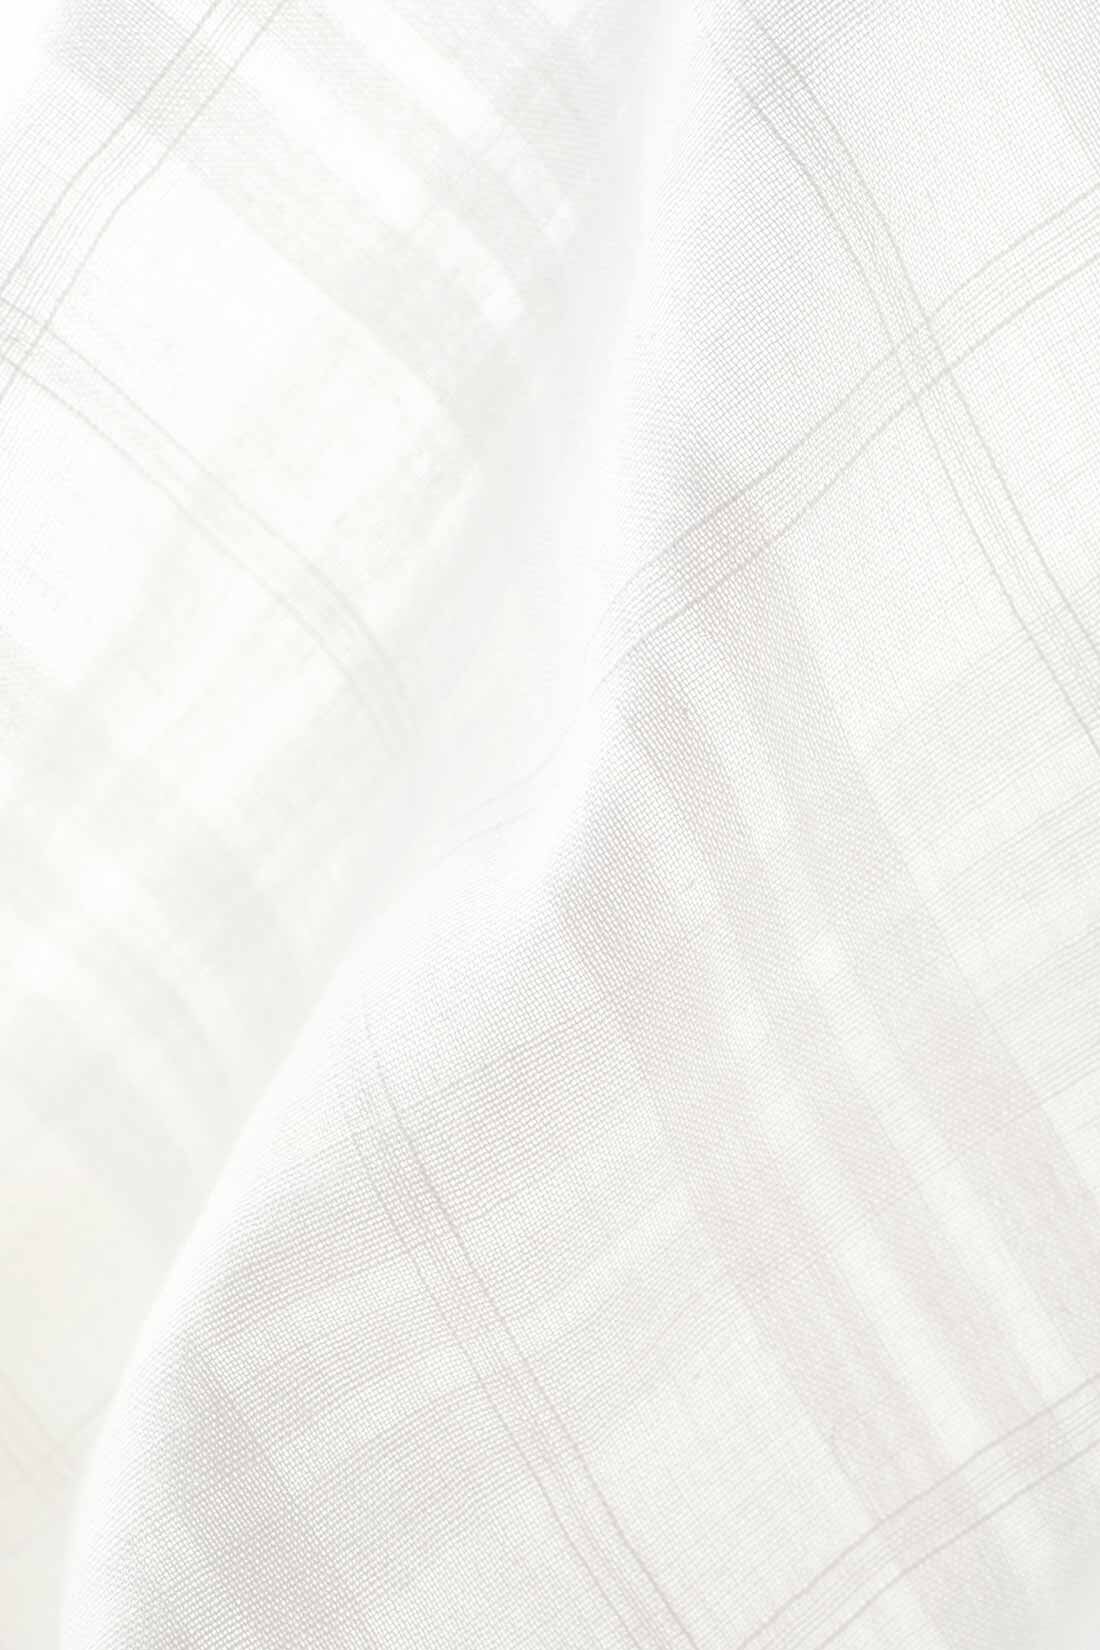 THREE FIFTY STANDARD|THREE FIFTY STANDARD 金子敦子さんと作った オーガニックコットンカーディガン〈オフホワイト〉|オーガニックコットン糸を使用し、日本国内で織り上げた格子柄の生地。透け感を楽しみながら、天然素材特有のやさしい肌ざわりを感じられます。